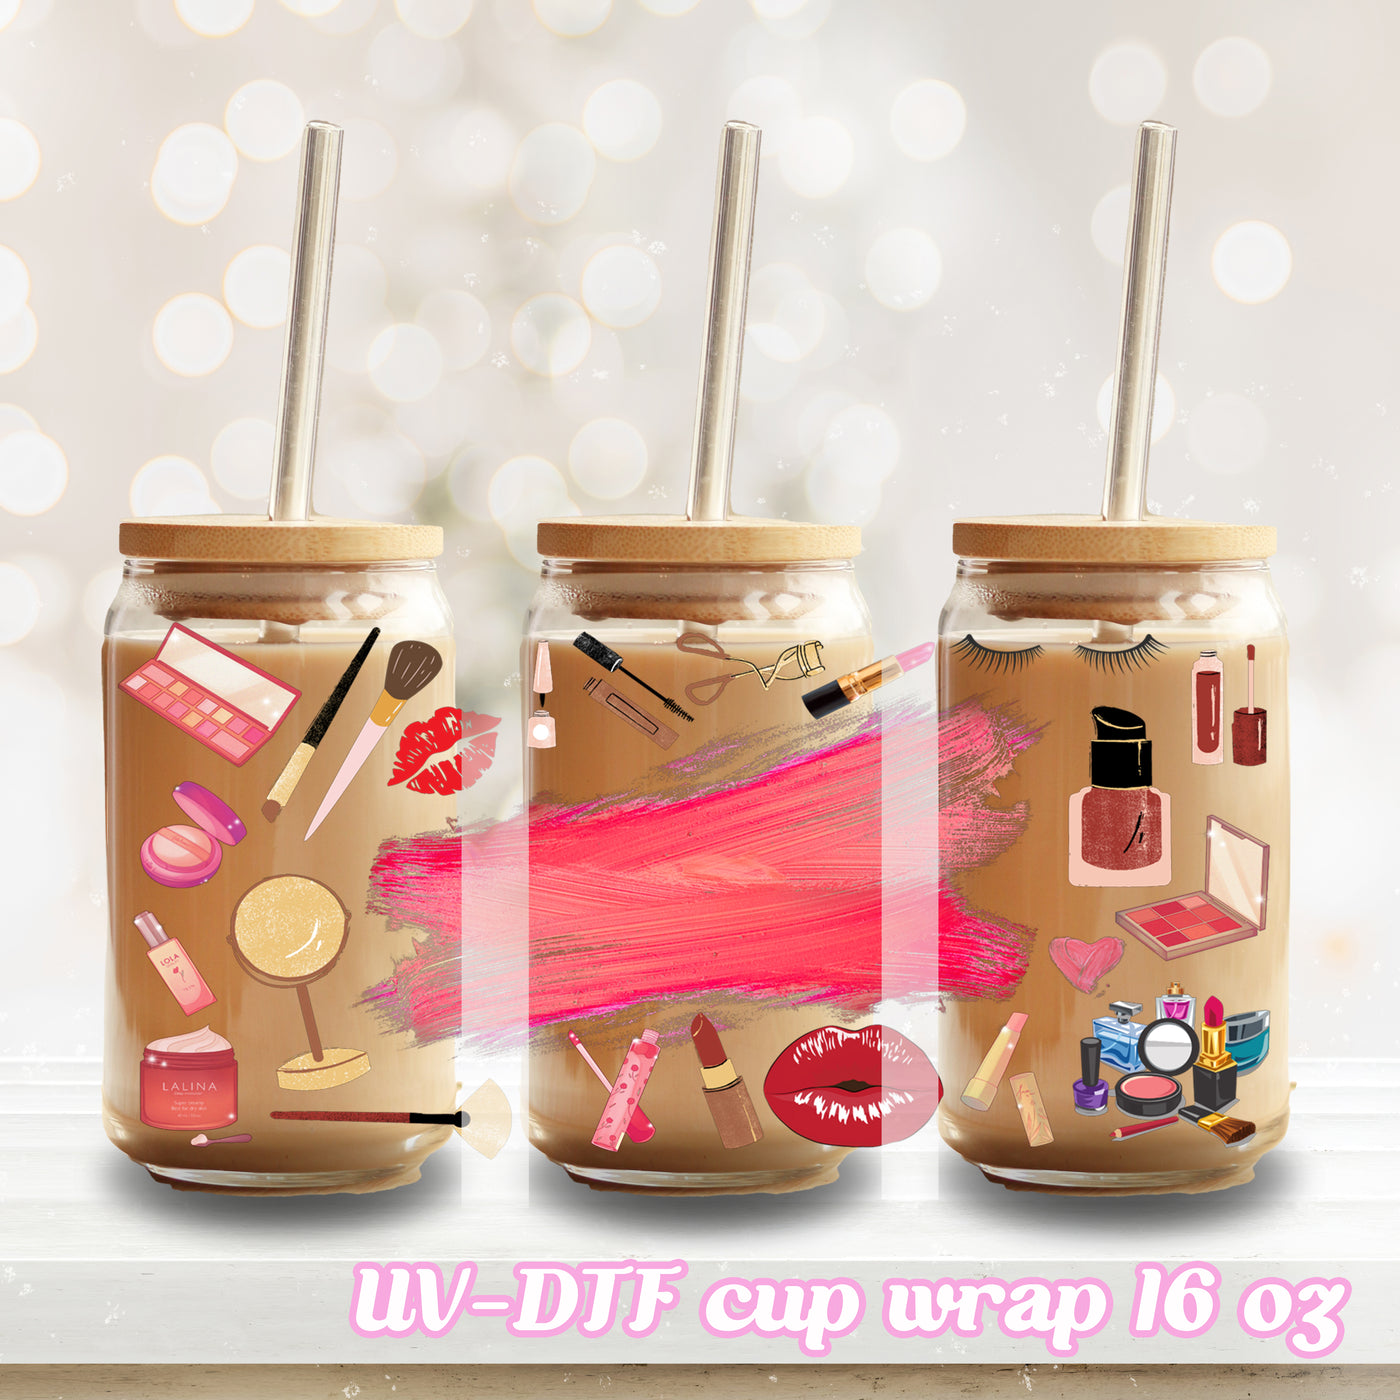 UV DTF - Make up beauty - 16oz Libbey Glass Cup Wrap Only